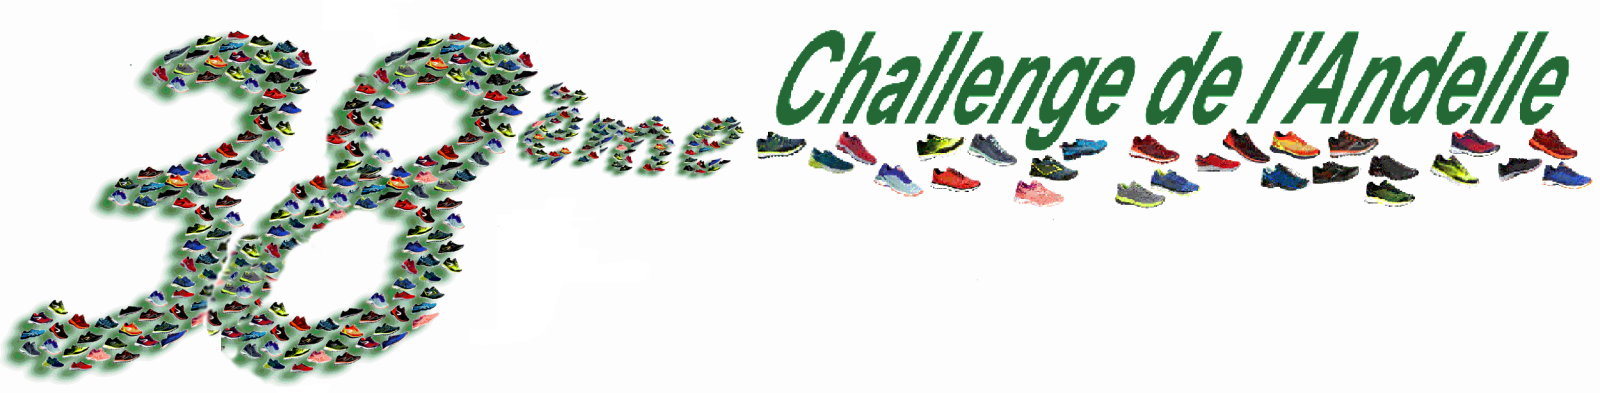 38eme Challenge de l'Andelle